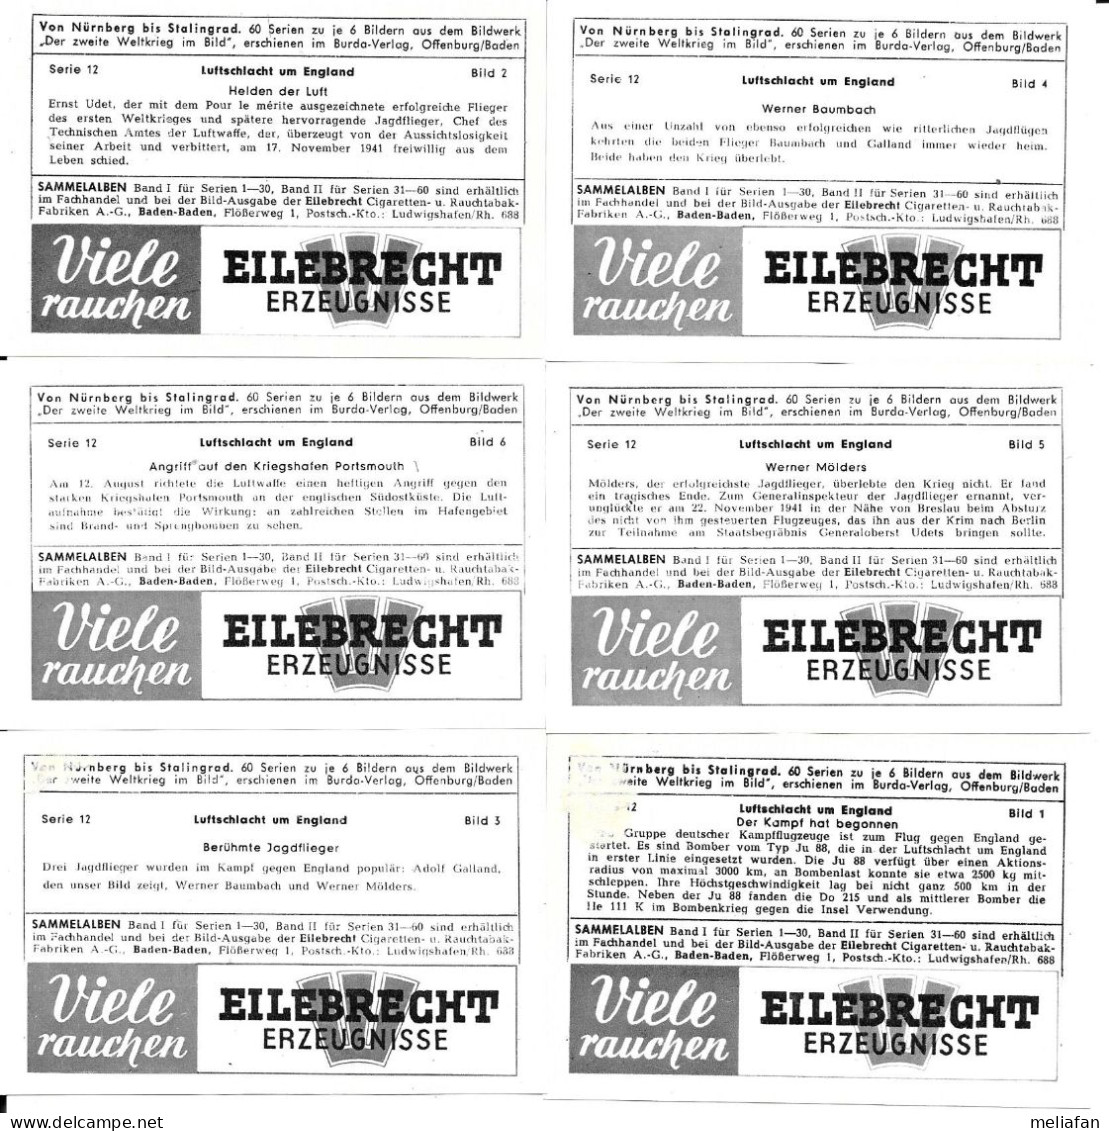 BZ12 - SERIE 6 IMAGES CIGARETTES EILEBRECHT BATAILLE D'ANGLETERRE - ERNST UDET ADOLF GALLAND WERNER MOLDERS WERNER BAUMB - 1939-45